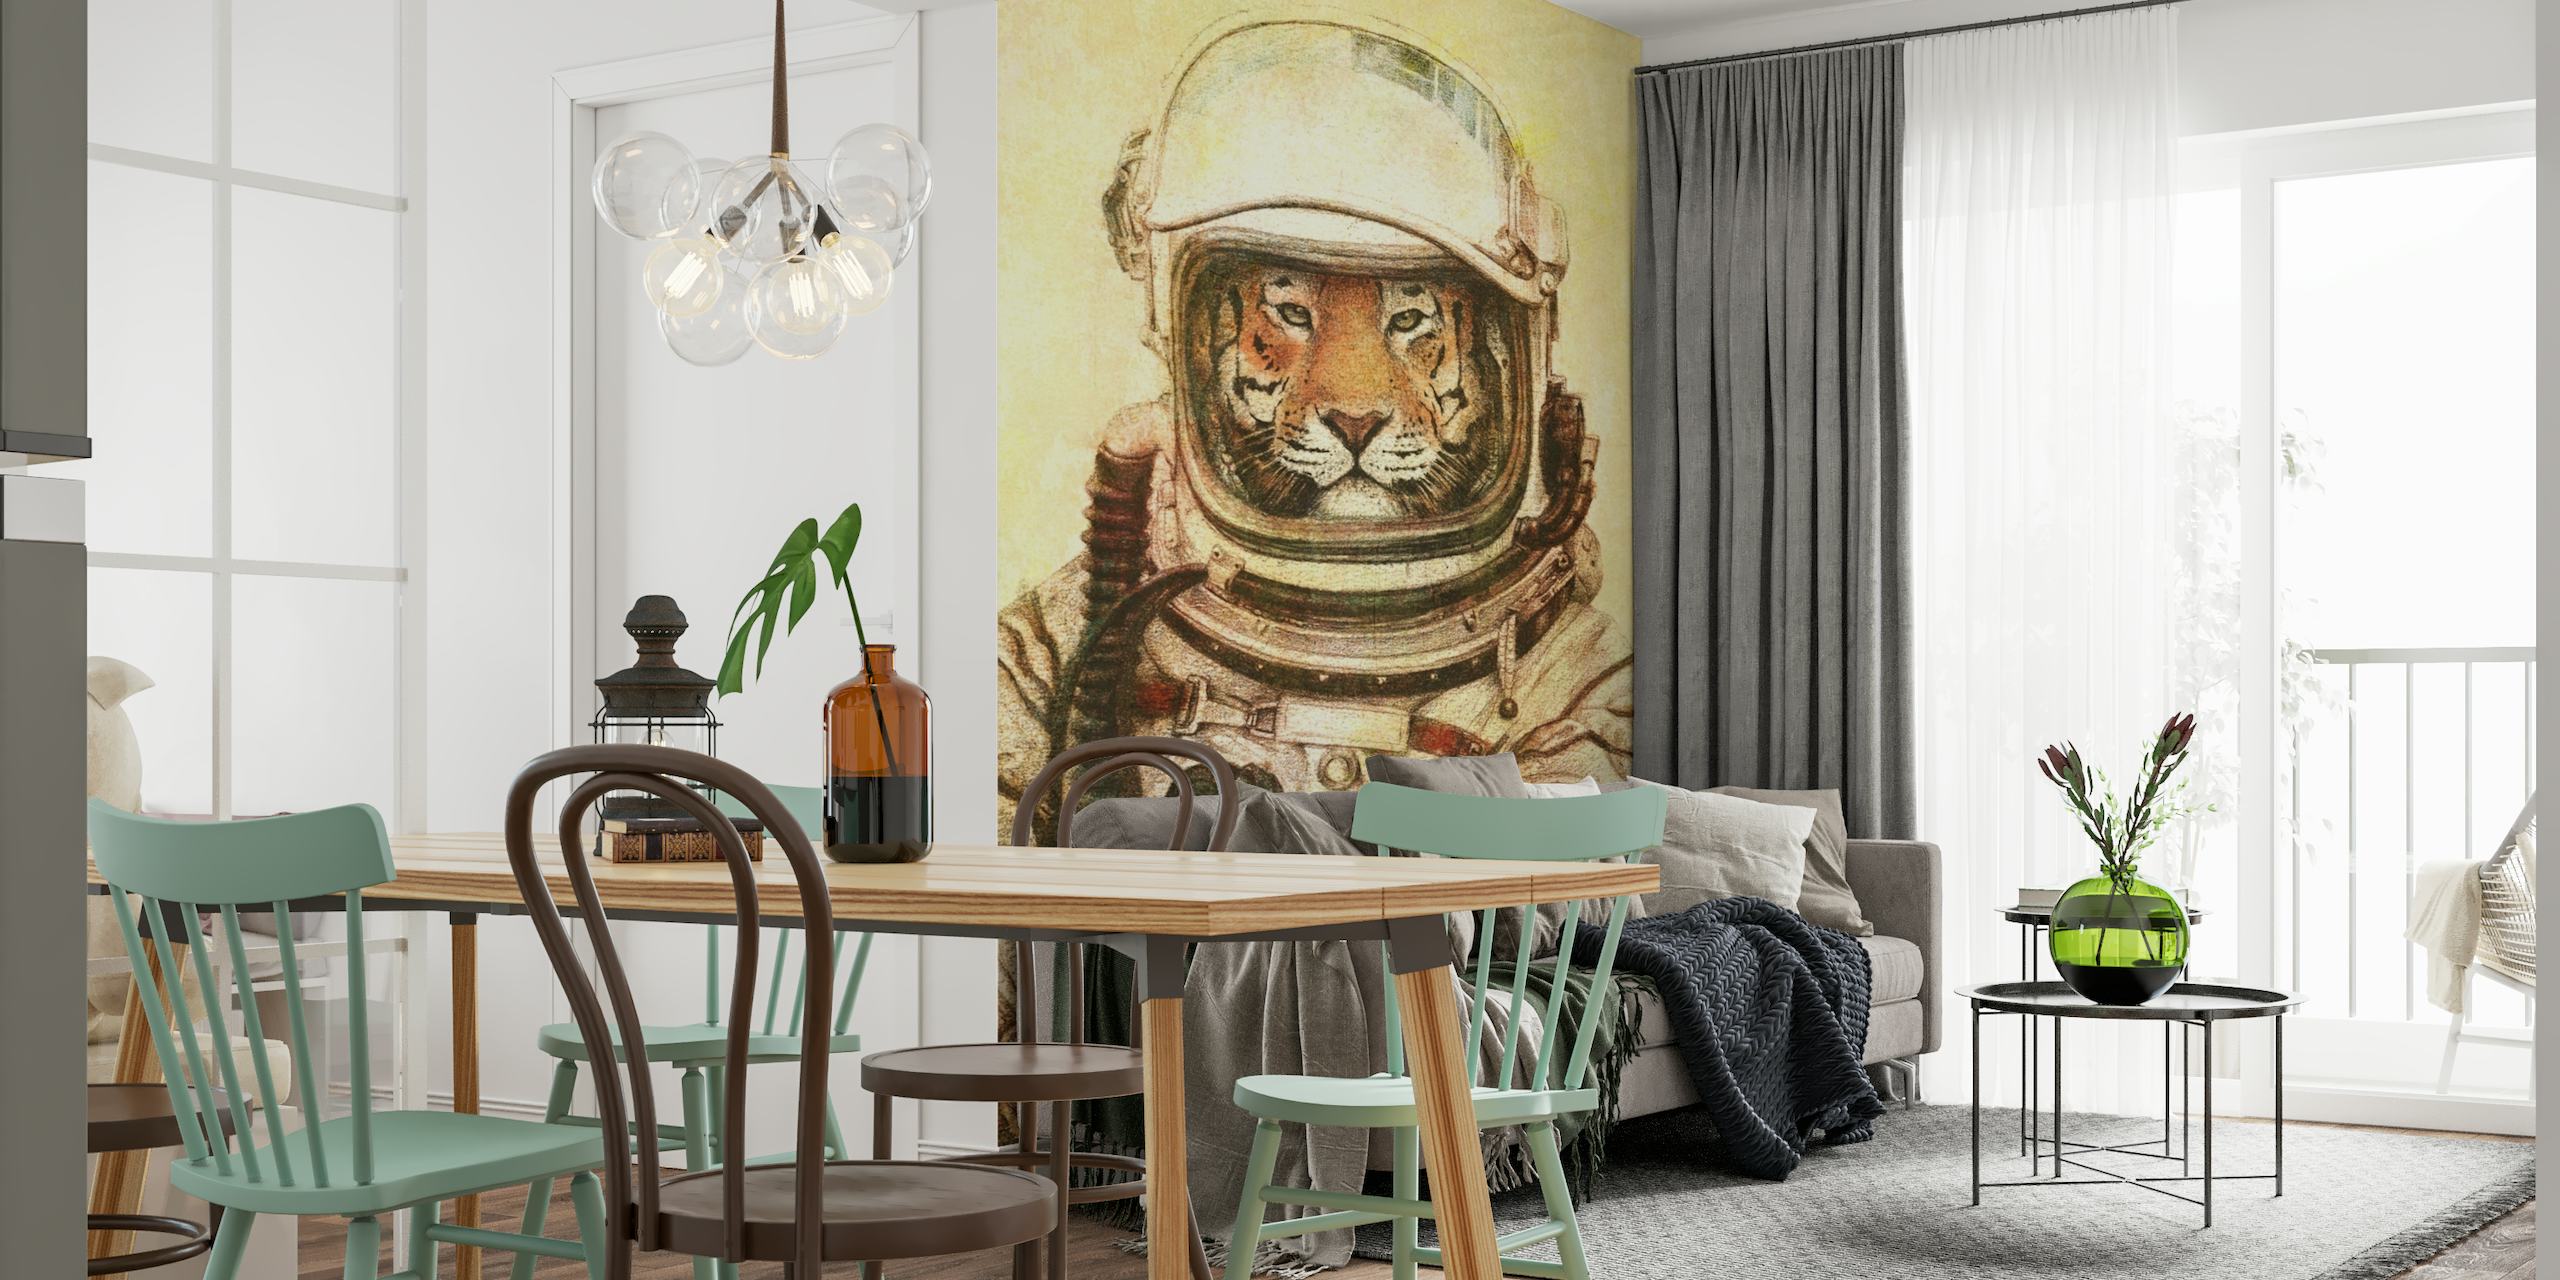 Papier peint mural d'astronaute tigre représentant l'exploration spatiale avec une touche sauvage